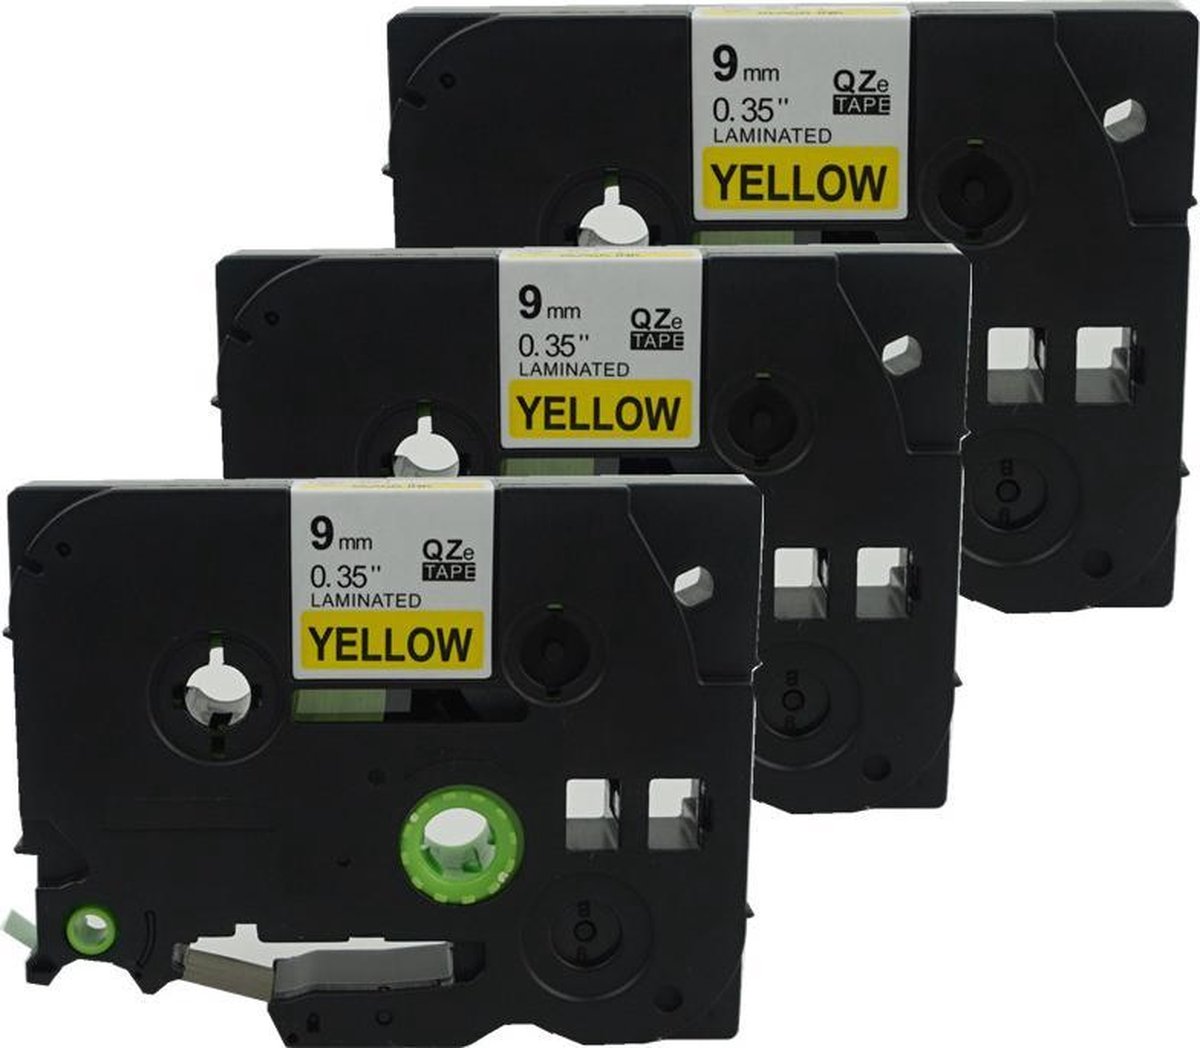 3x Labeltape voor Brother TZe-621 9mm / Zwart op geel / 9mm x 8m / Compatibele met TZ-621 voor Brother P-Touch 1000